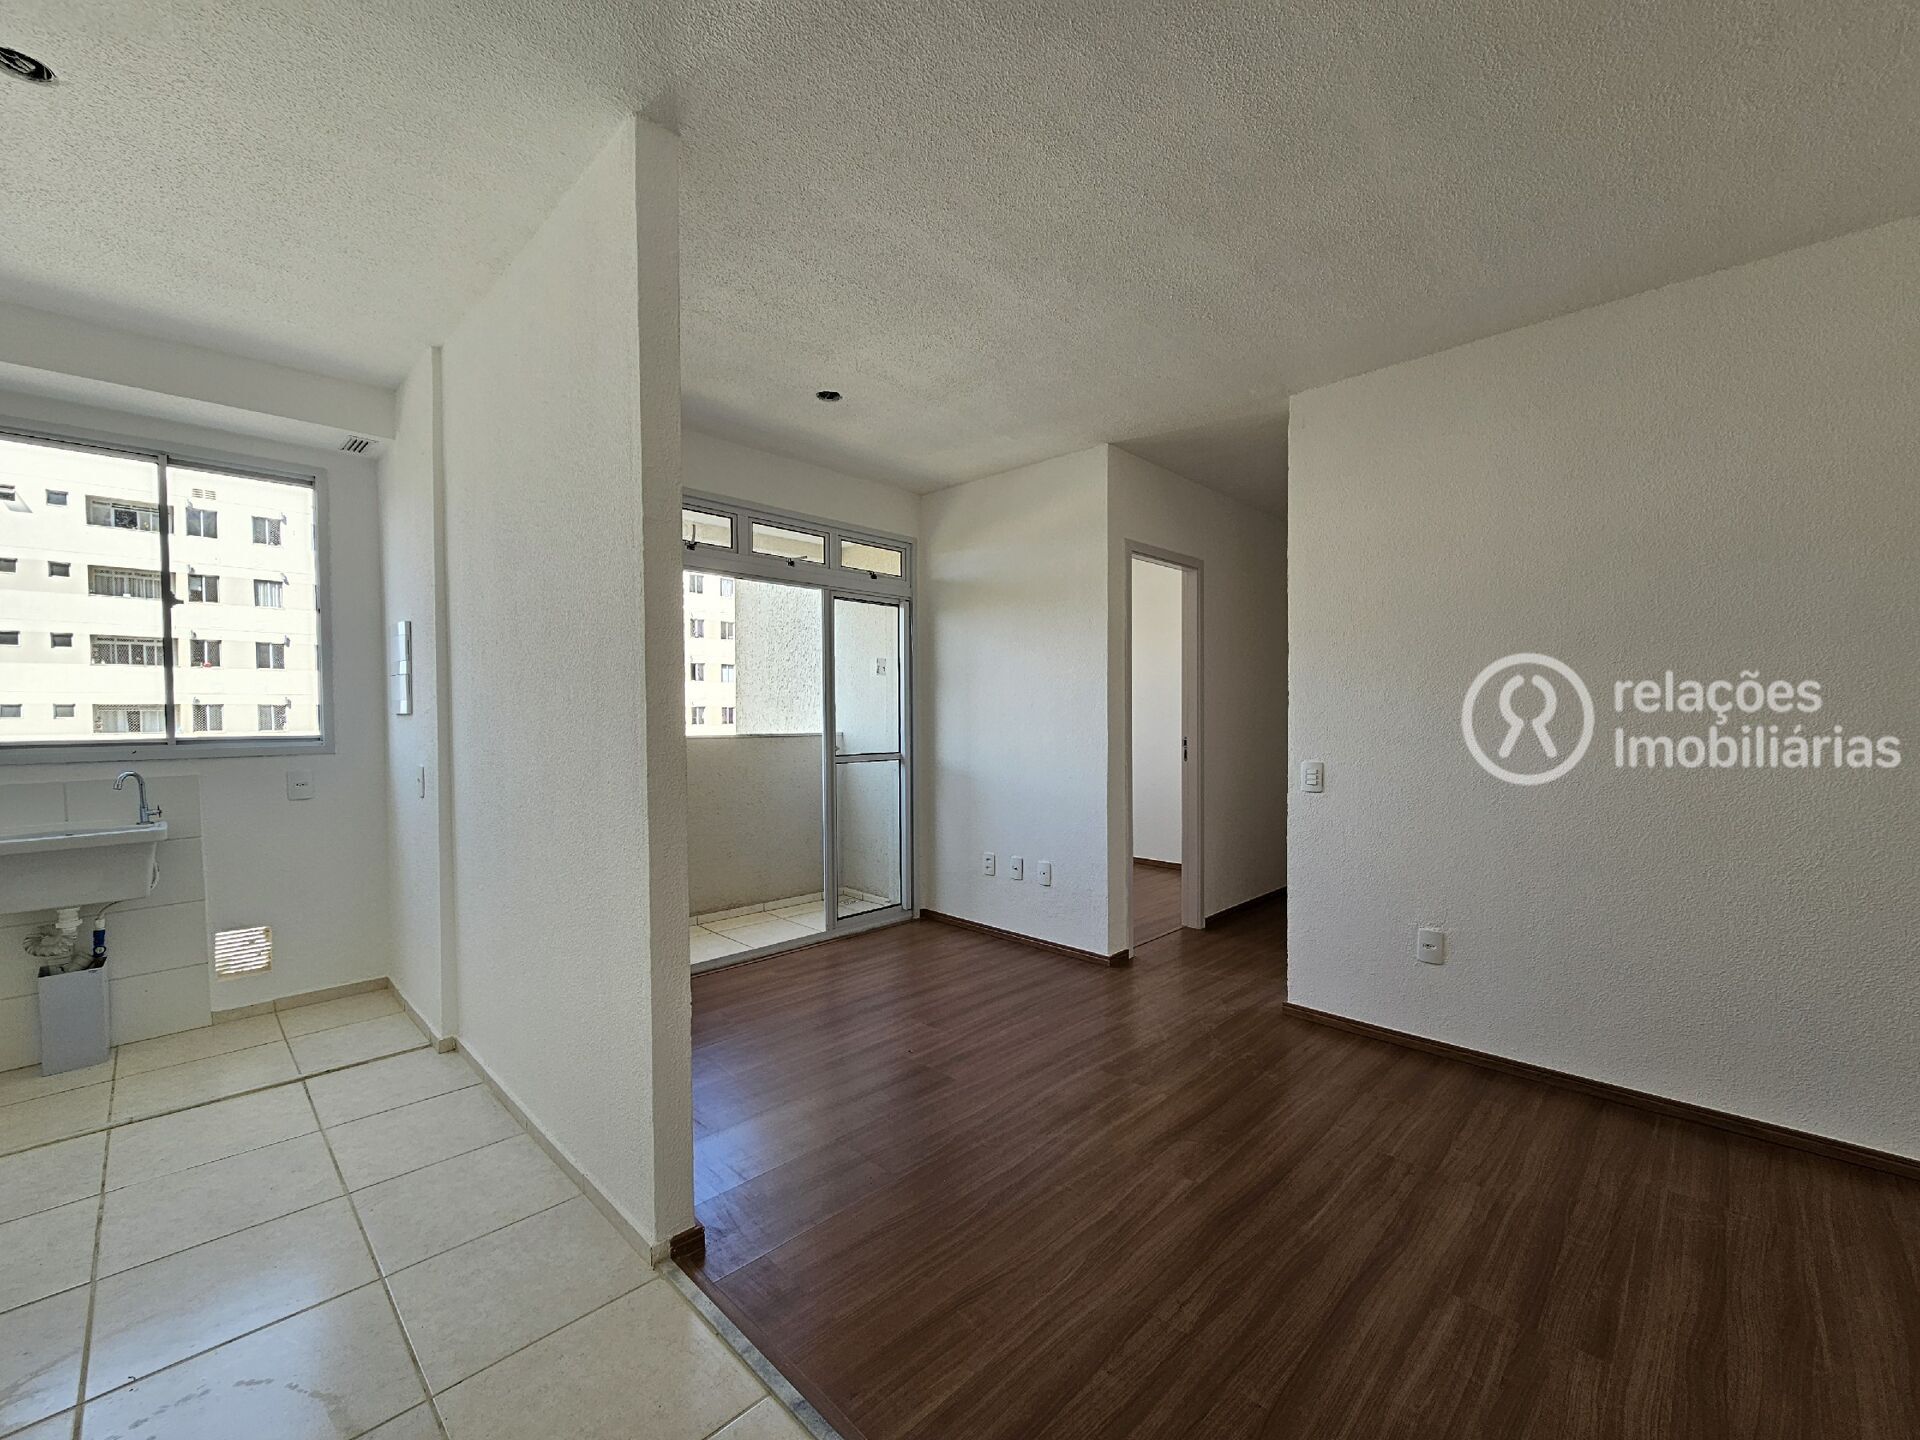 Apartamento, 3 quartos, 65 m² - Foto 2